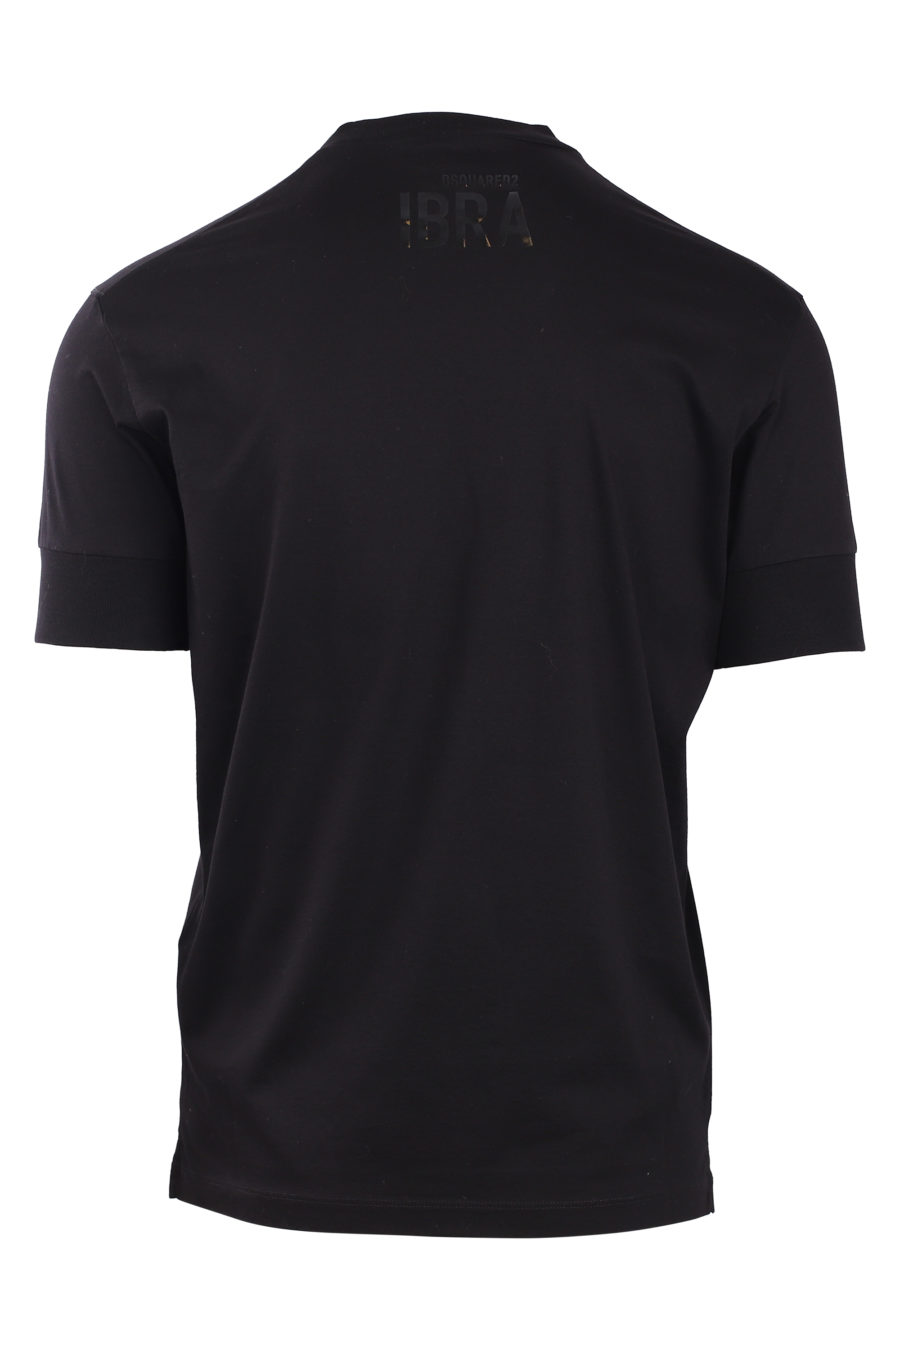 Camiseta negra "ibra" - IMG 0792